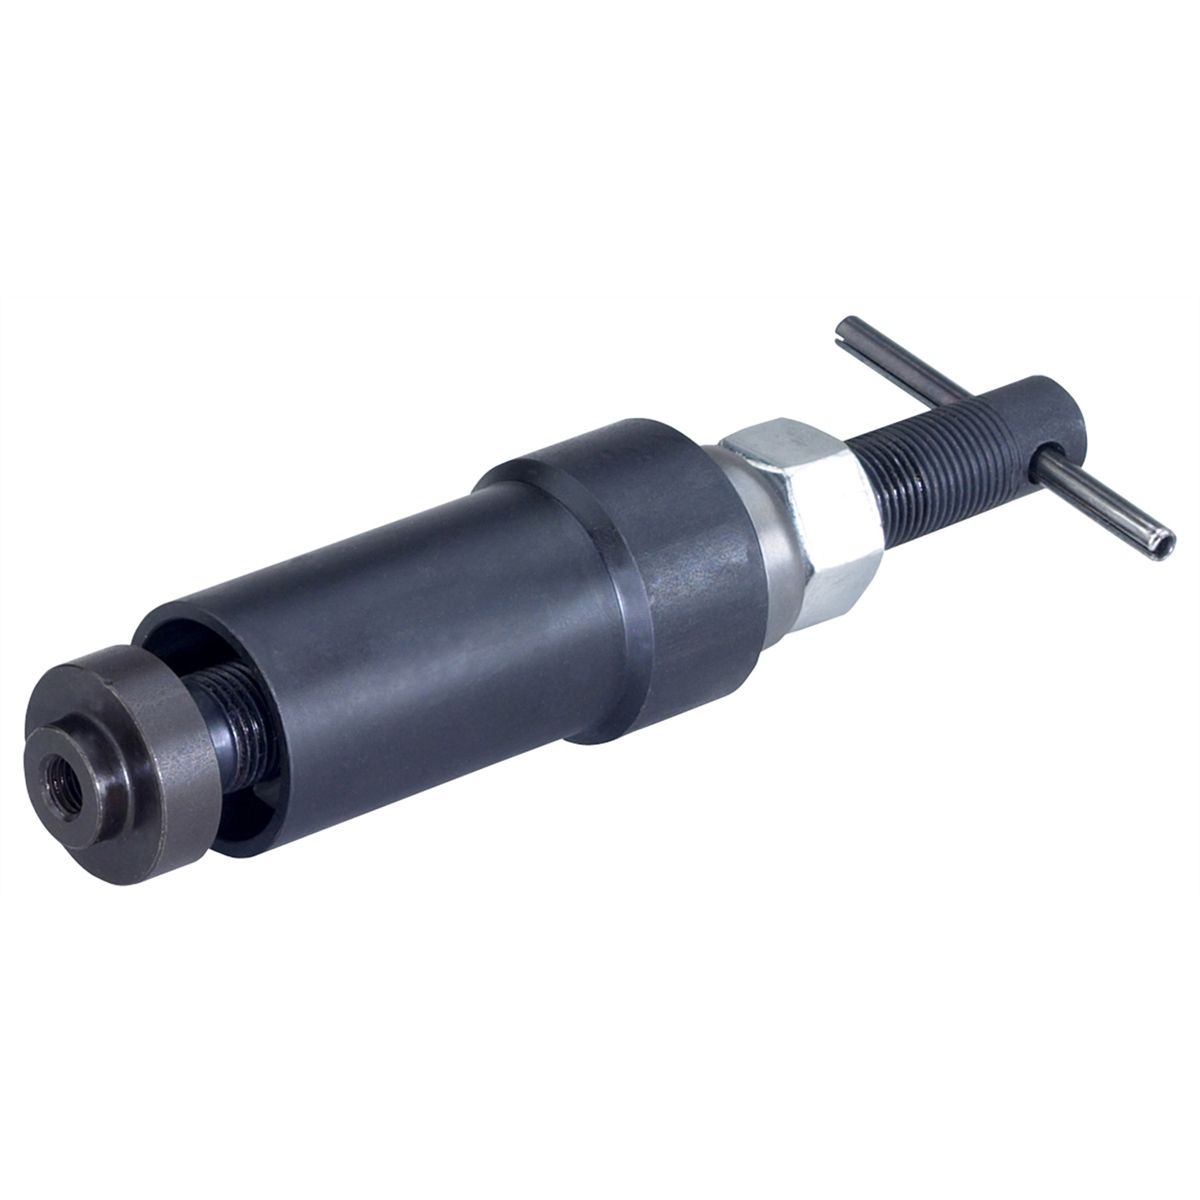 Fuel Injector Nozzle Puller / Installer - Mack